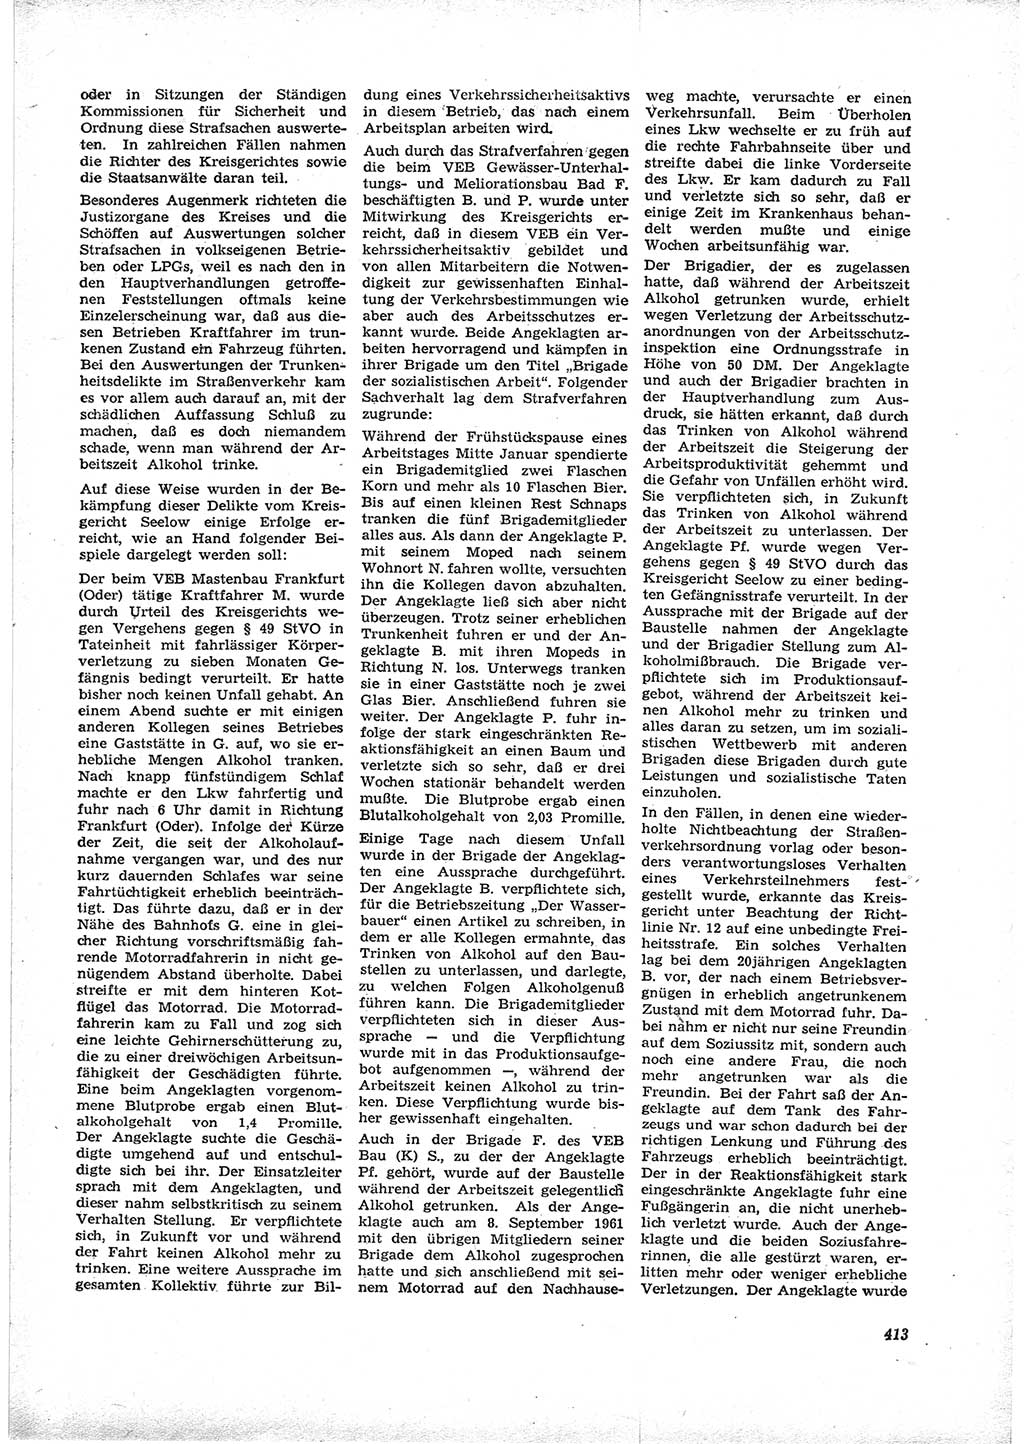 Neue Justiz (NJ), Zeitschrift für Recht und Rechtswissenschaft [Deutsche Demokratische Republik (DDR)], 16. Jahrgang 1962, Seite 413 (NJ DDR 1962, S. 413)